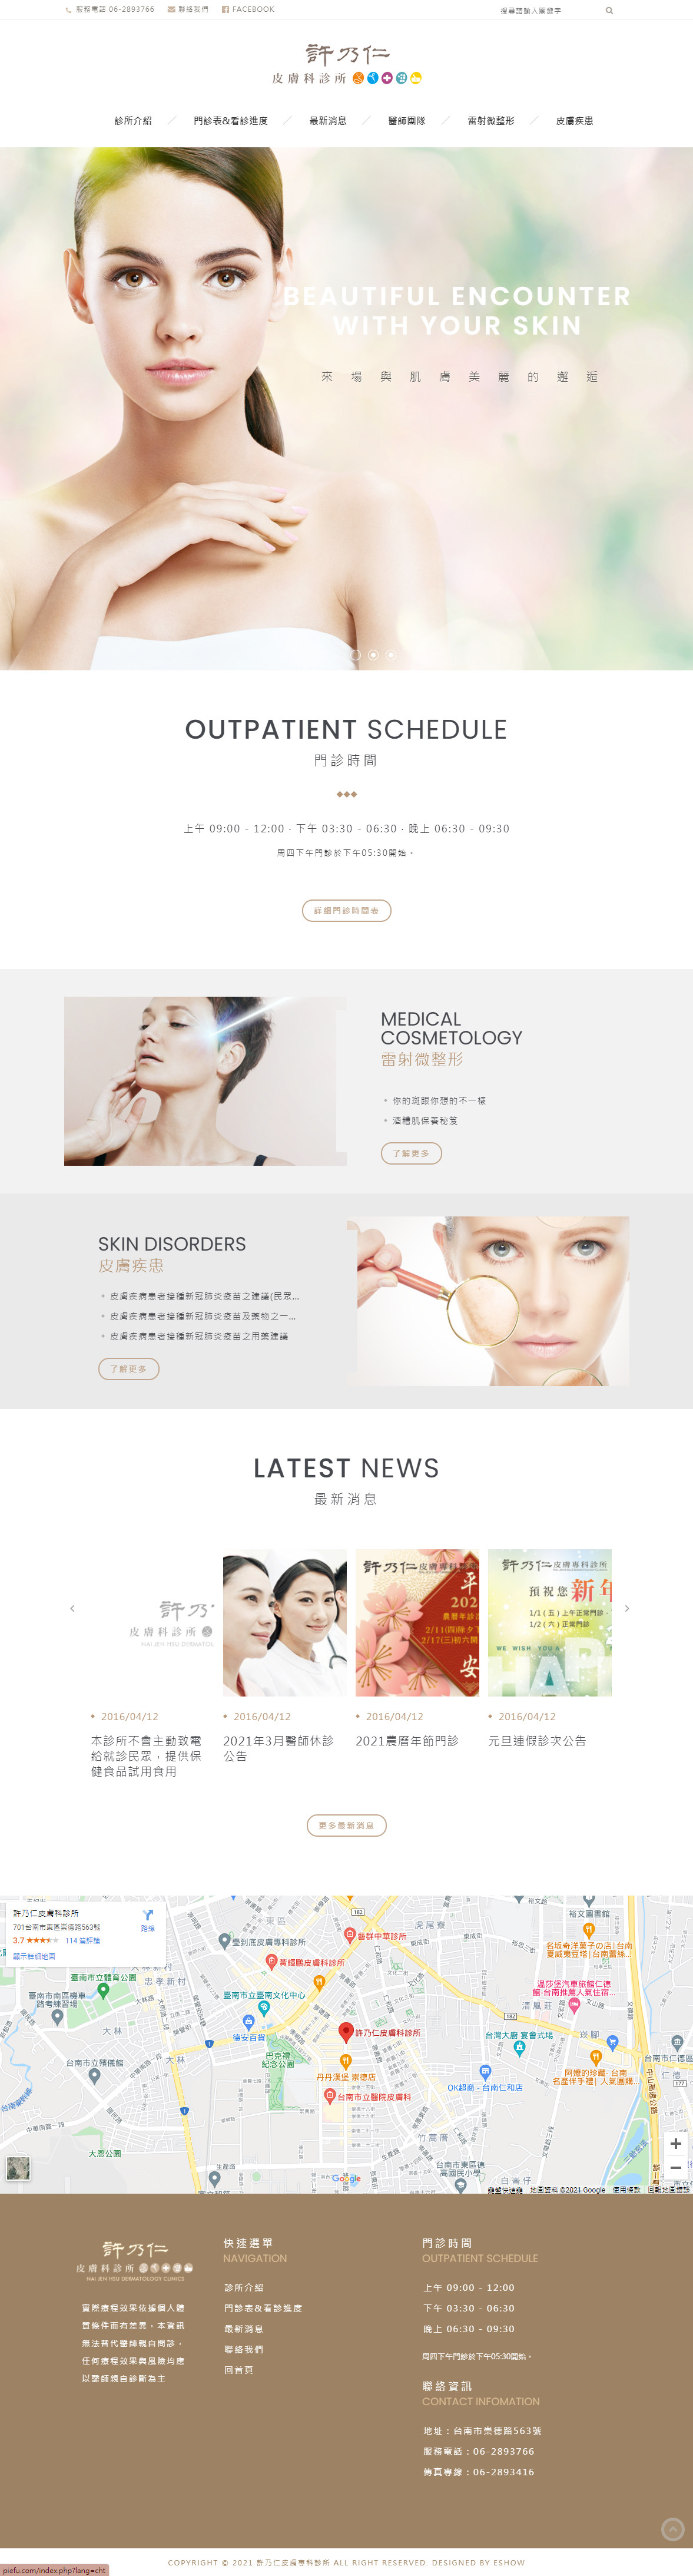 許乃仁皮膚科診所 皮膚科診所網站設計
網站設計